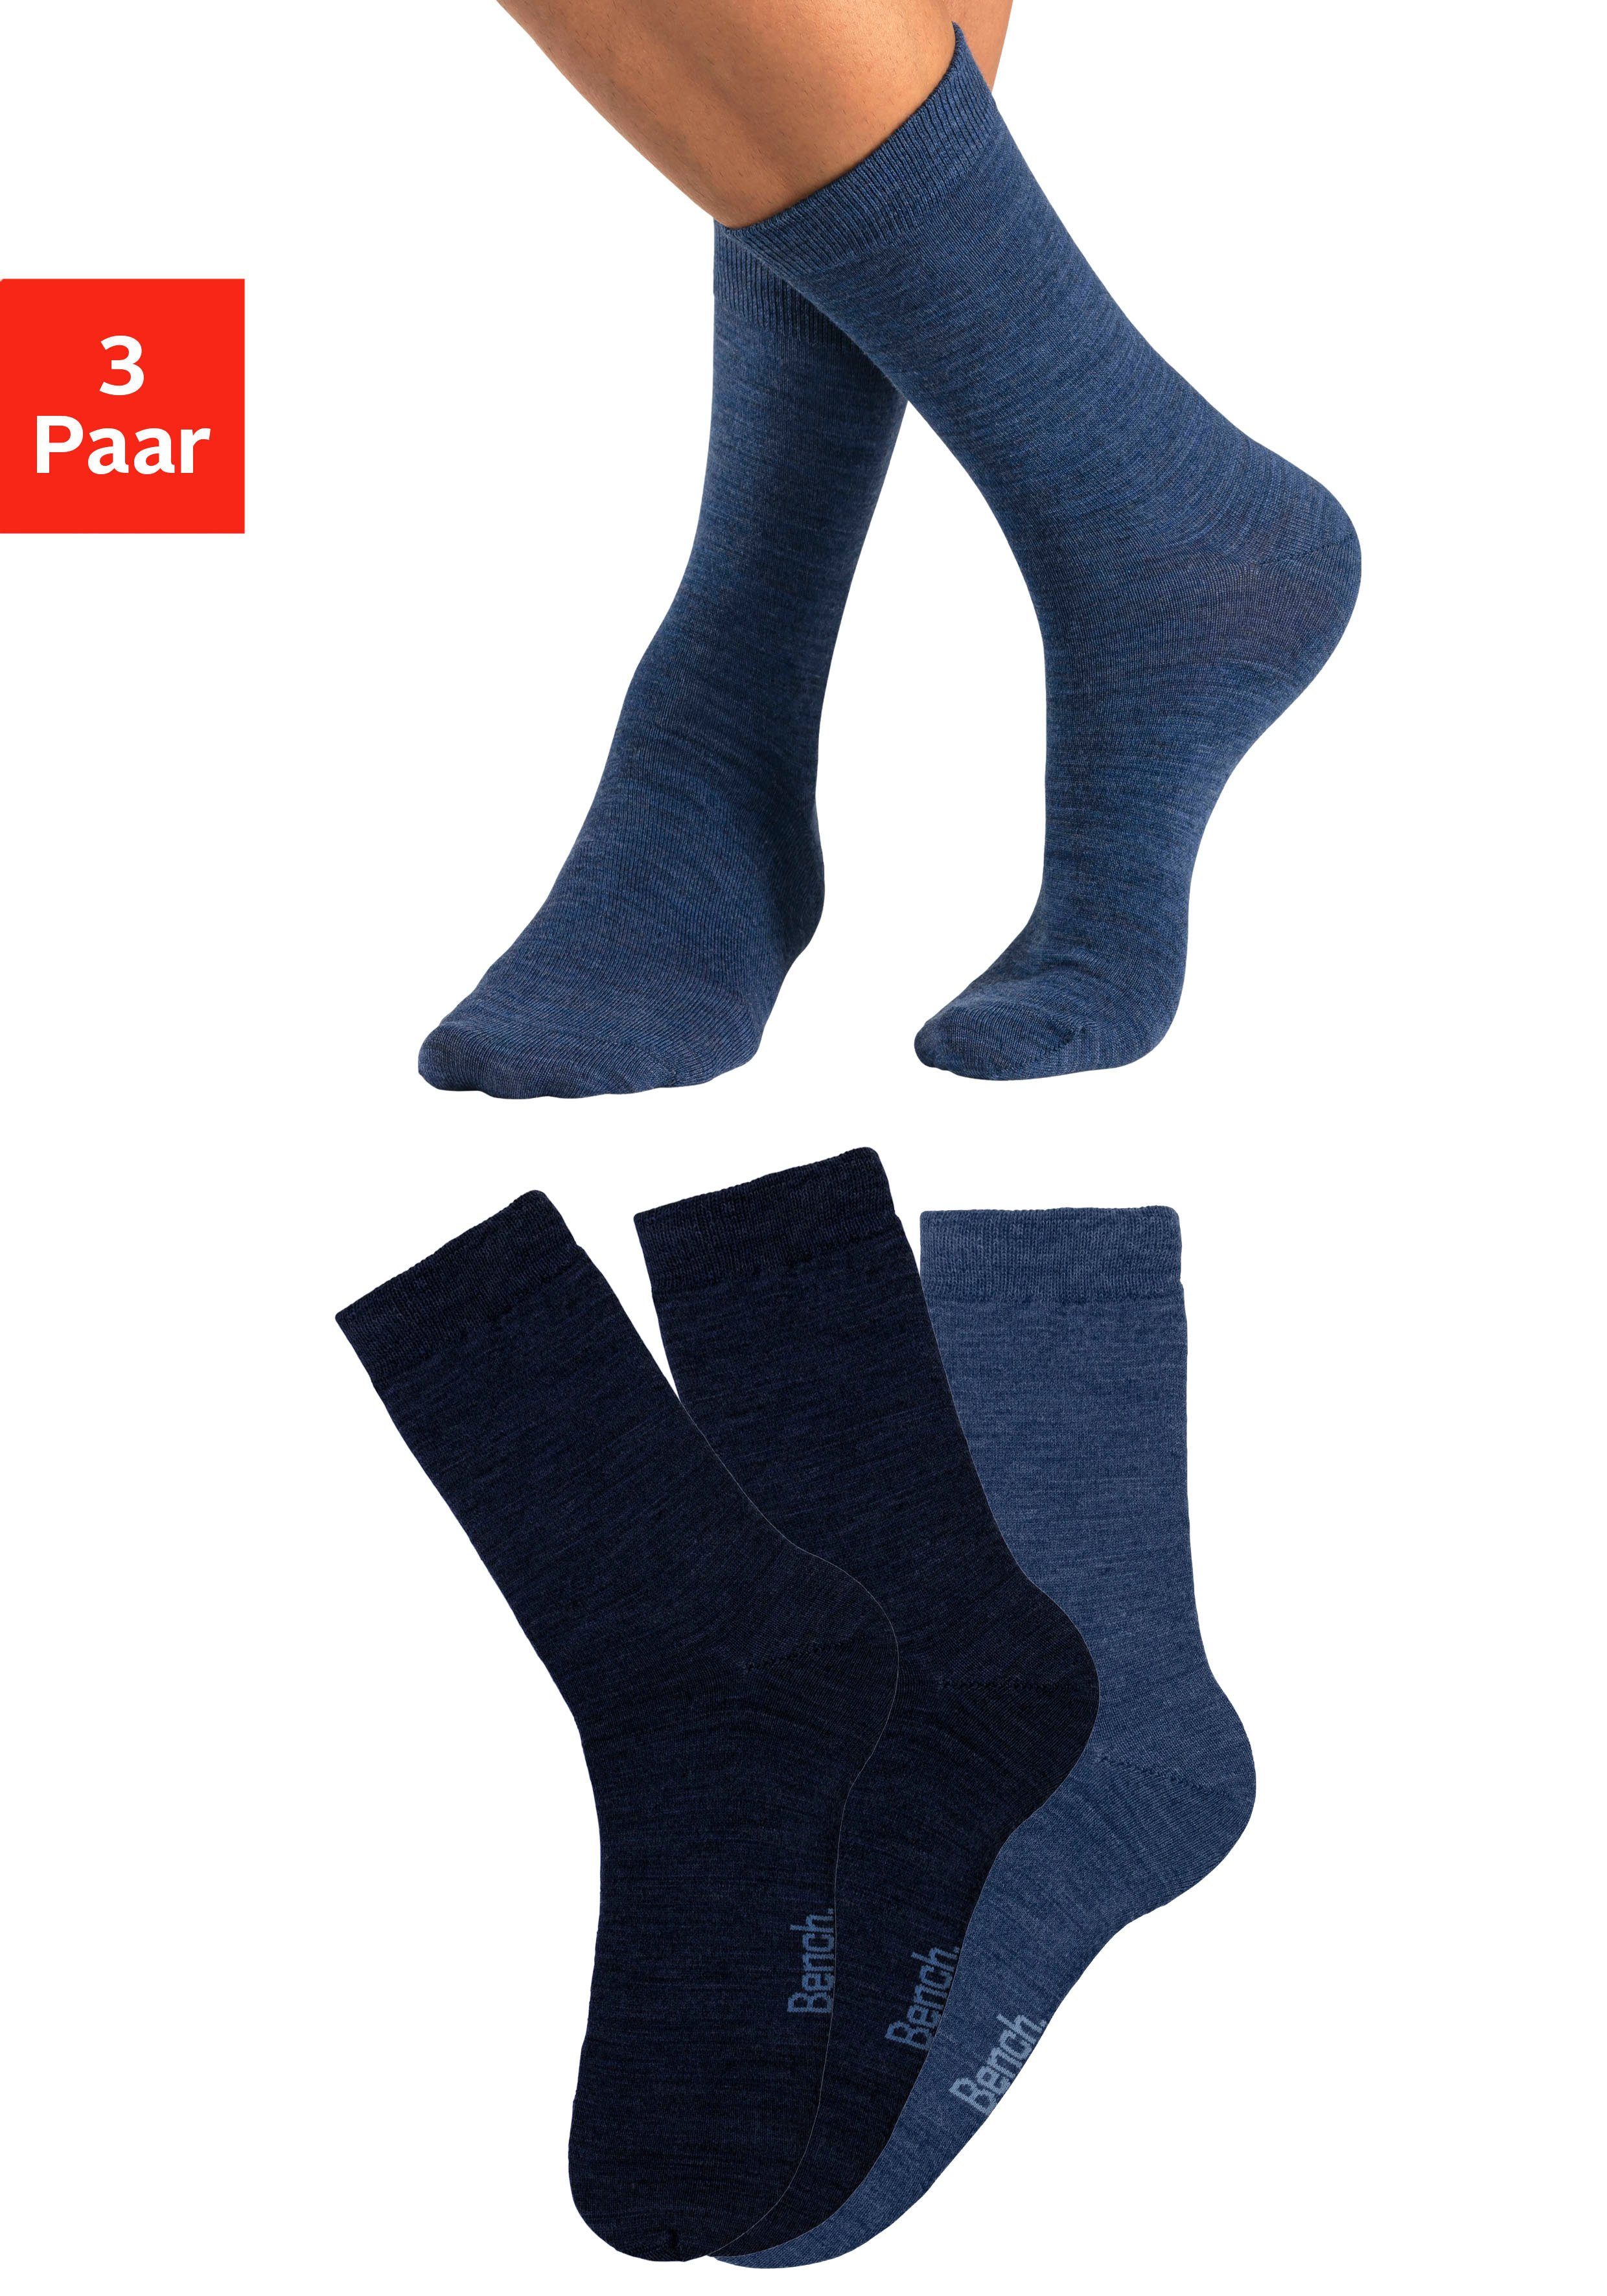 Bench. Socken (3-Paar) Wollsocken aus flauschigem Material 2x navy, 1x jeans